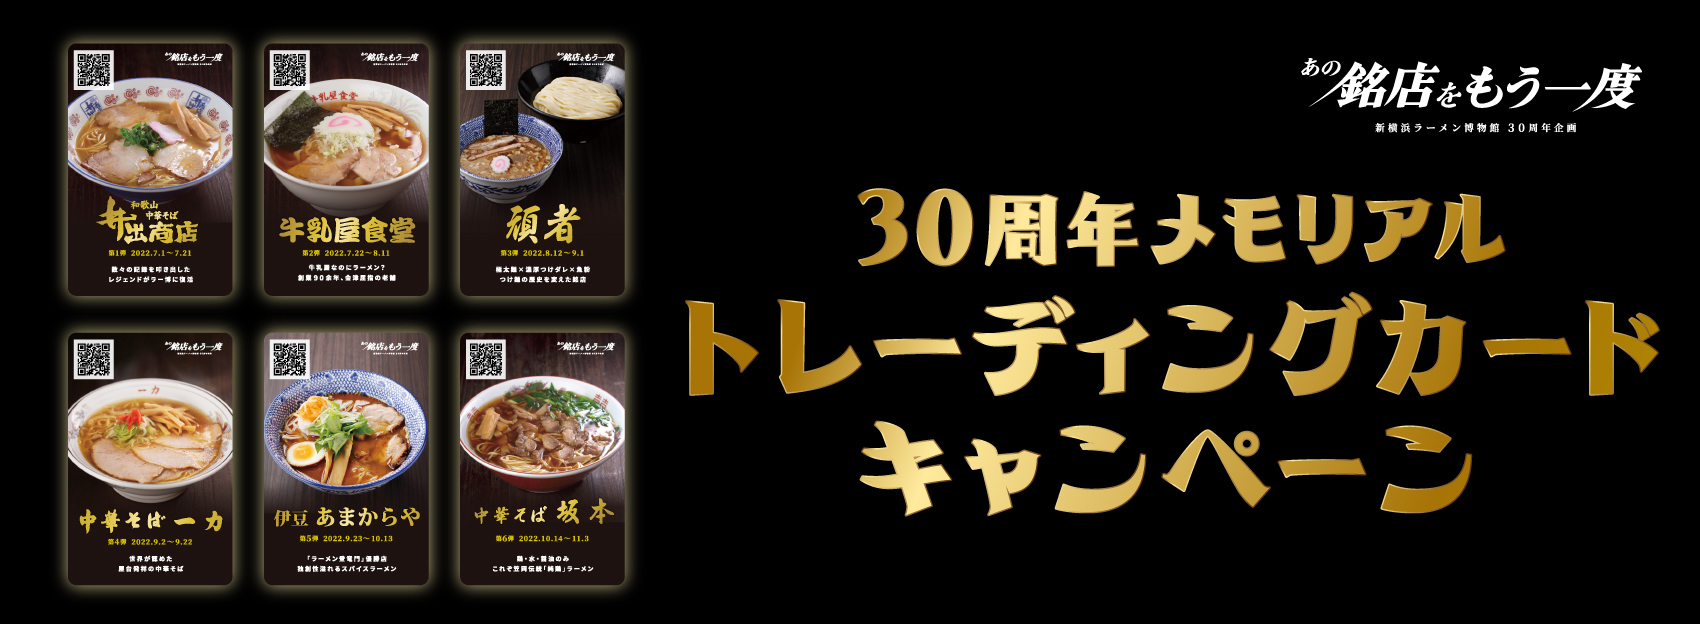 30周年メモリアルトレーディングカードキャンペーン - 新横浜